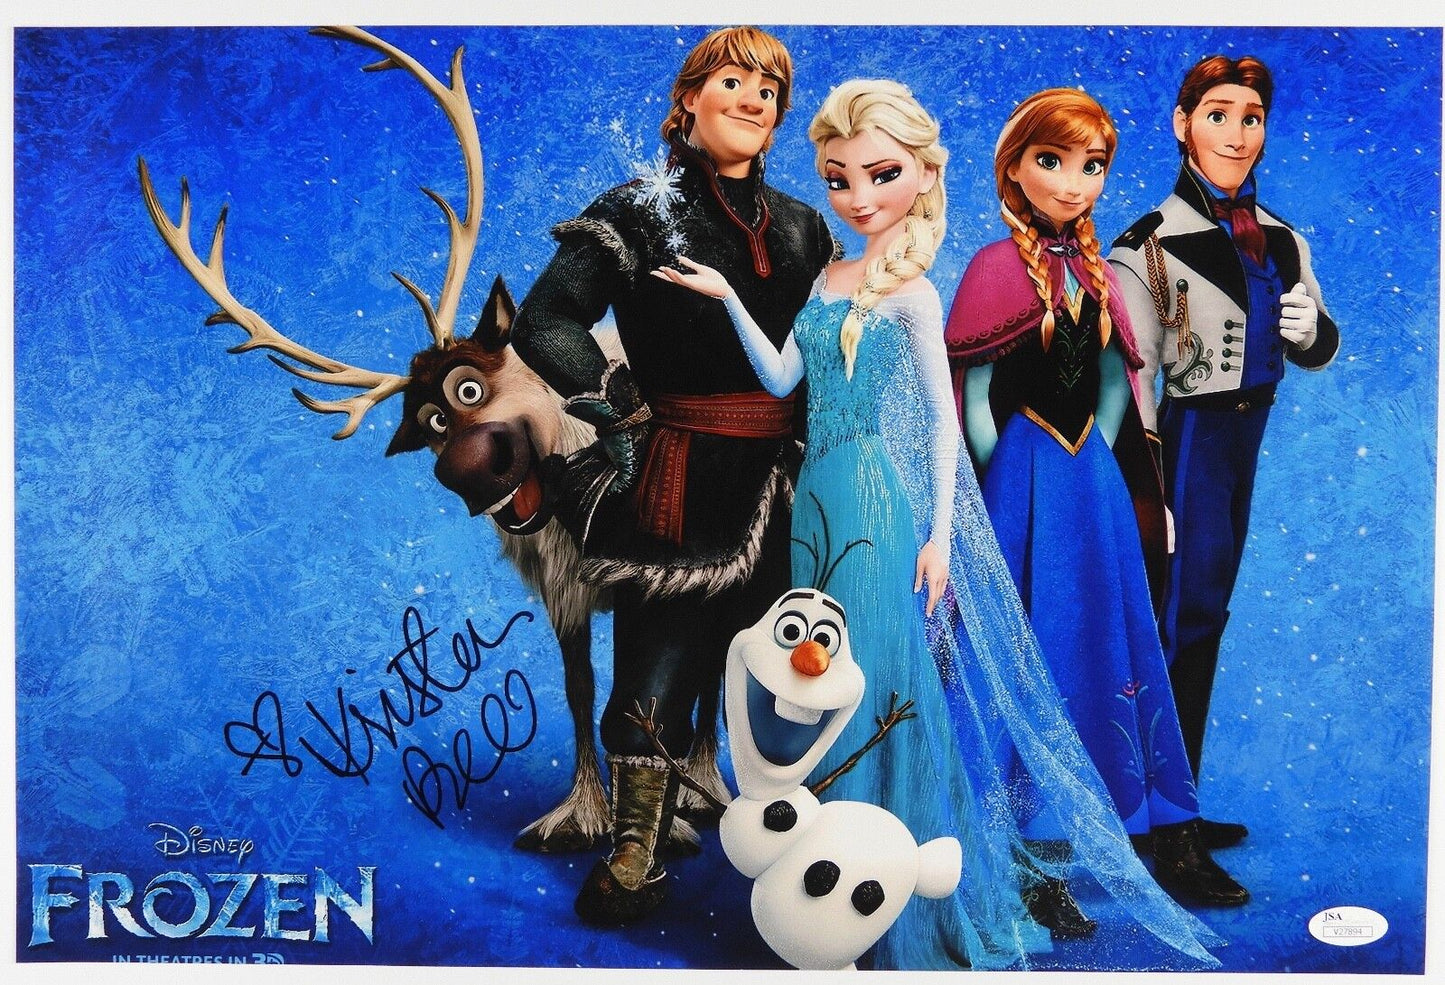 Kristen Bell Autograph Signed Photo JSA COA 12 x 18 Frozen